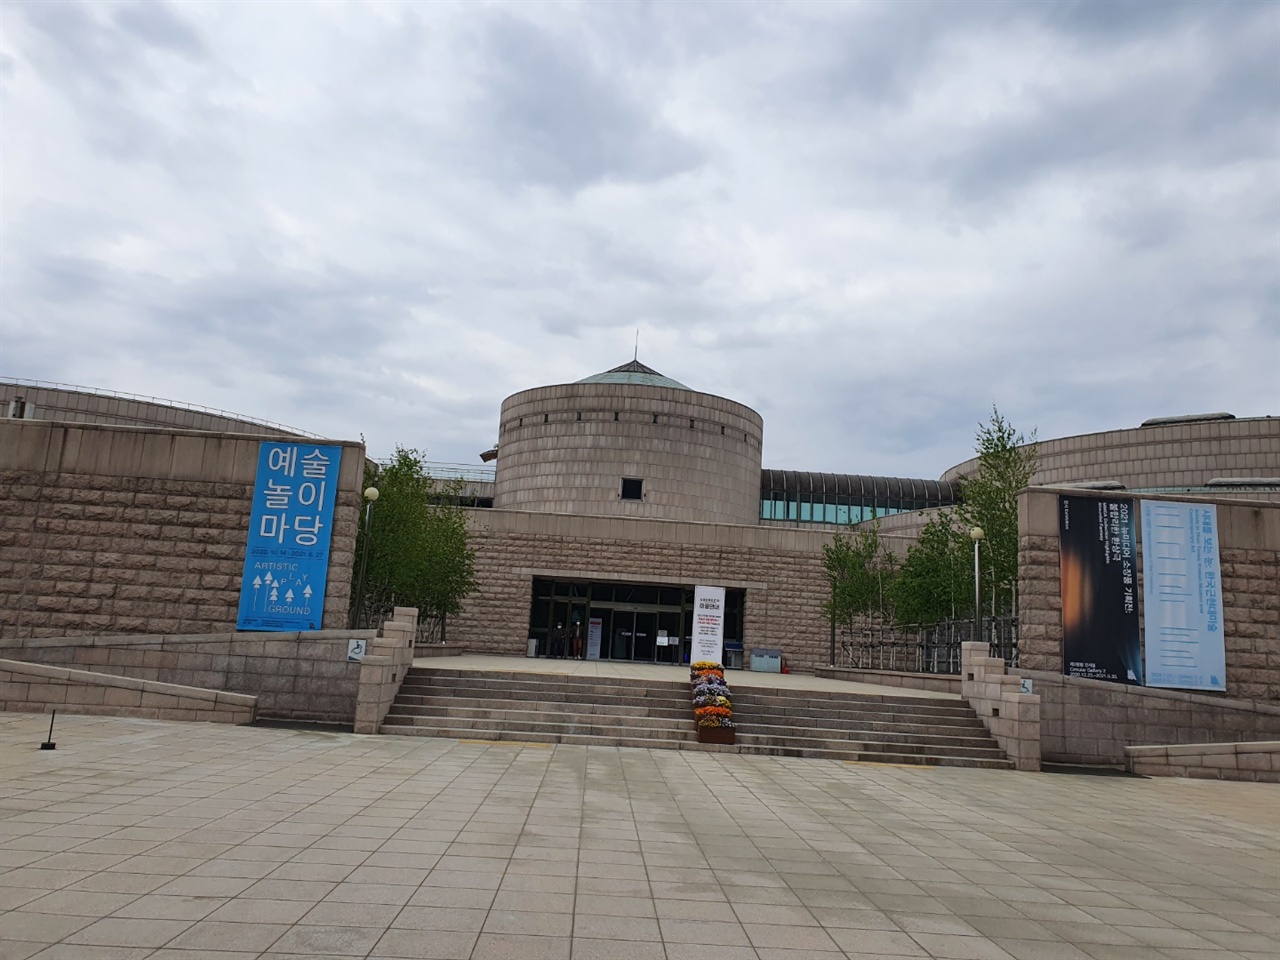 서울대공원안에 위치하면서 우리나라의 근현대 작품을 두루 살펴볼수 있는 국립현대미술관의 전경이다. 늘 상설전시가 이루어지고 있다.